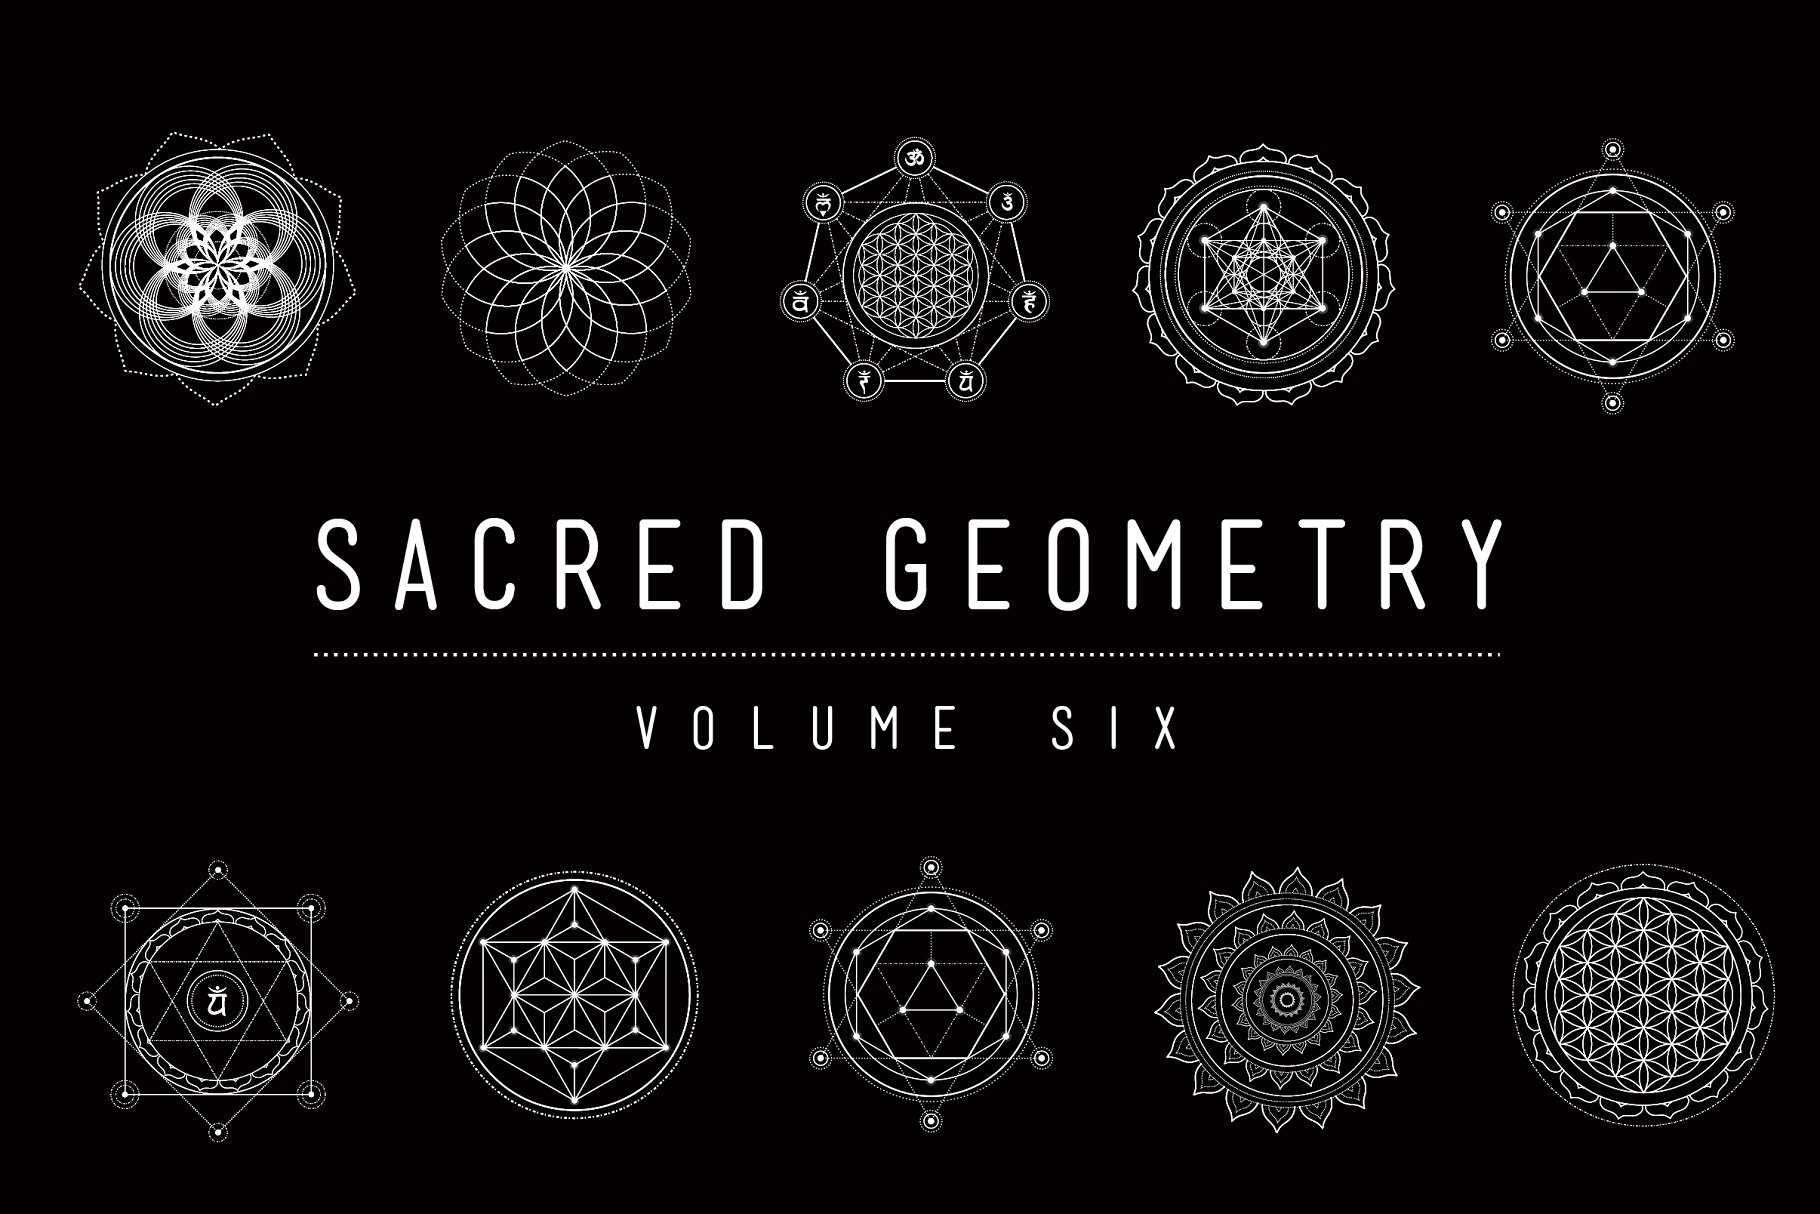 神圣宗教几何图形矢量素材包 Sacred Geometry Vector Pack Vol. 6插图(1)